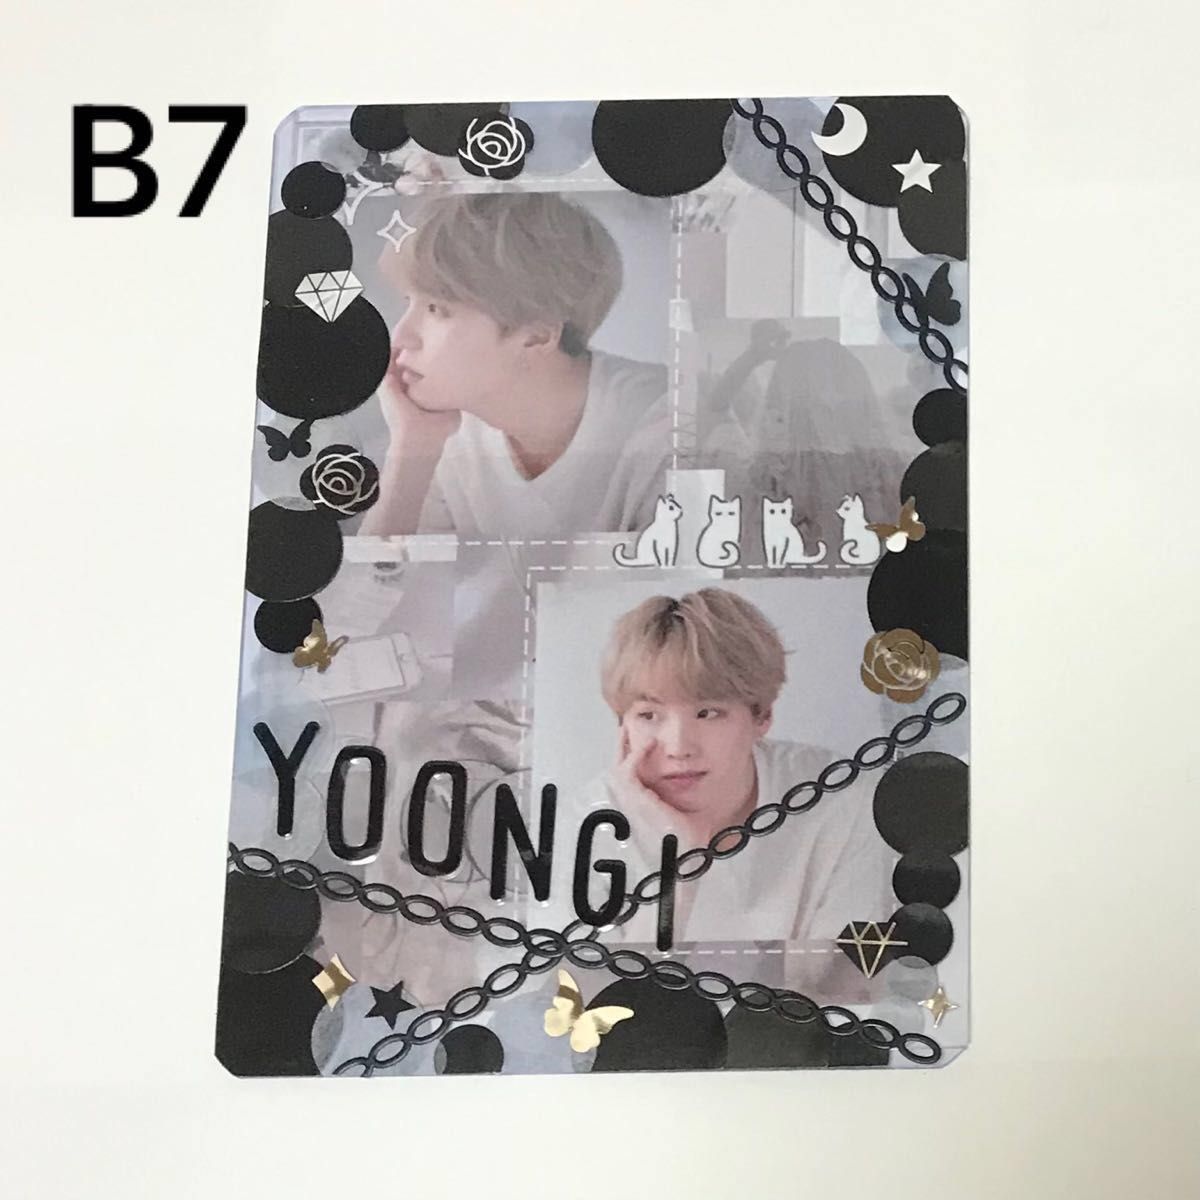 【B7サイズ】韓国製作者 マスタニム BTS SUGA シュガ ユンギ 硬質カードケース トレカケース シールデコ L判写真セット